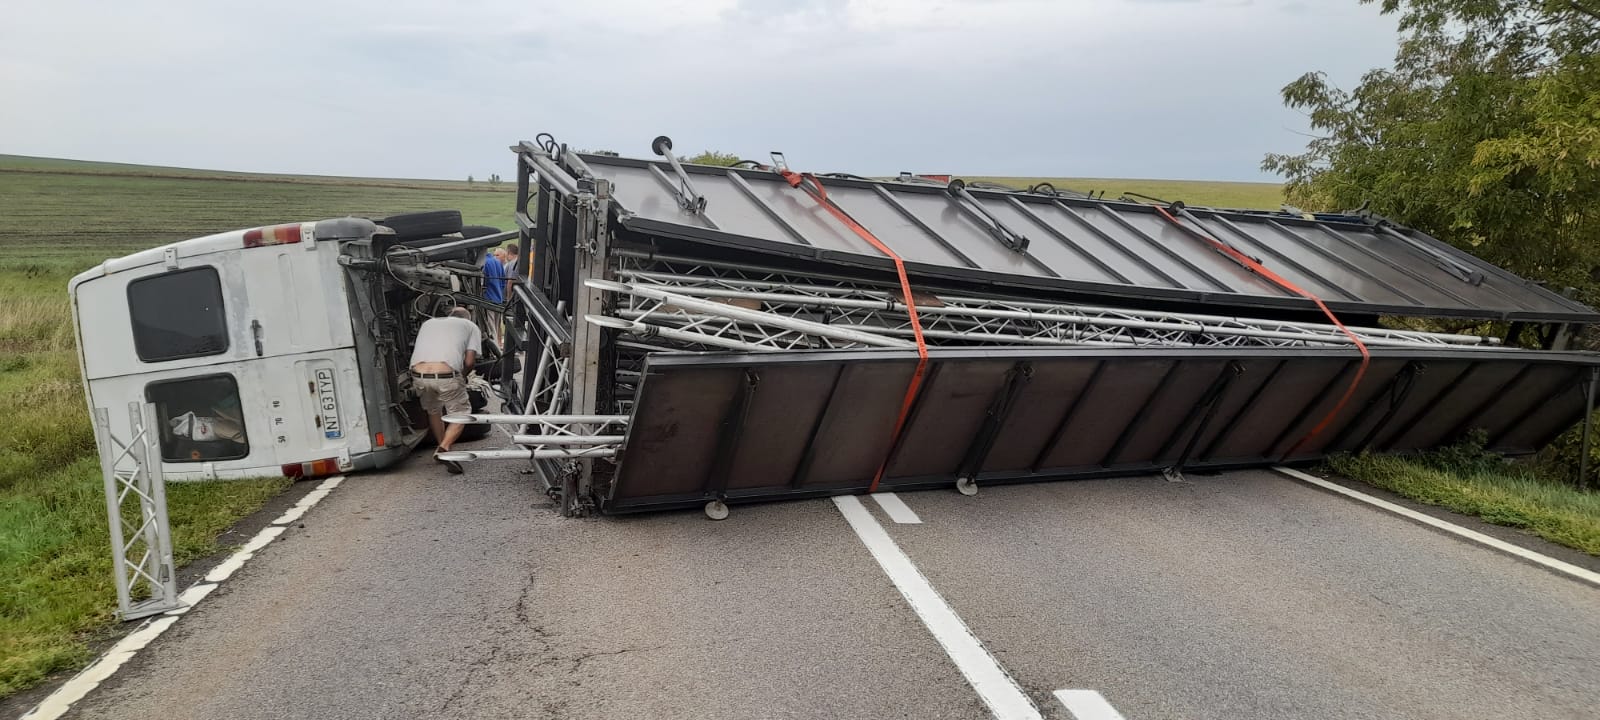 Trafic rutier blocat total pe DN 15, la Girov, din cauza unui accident